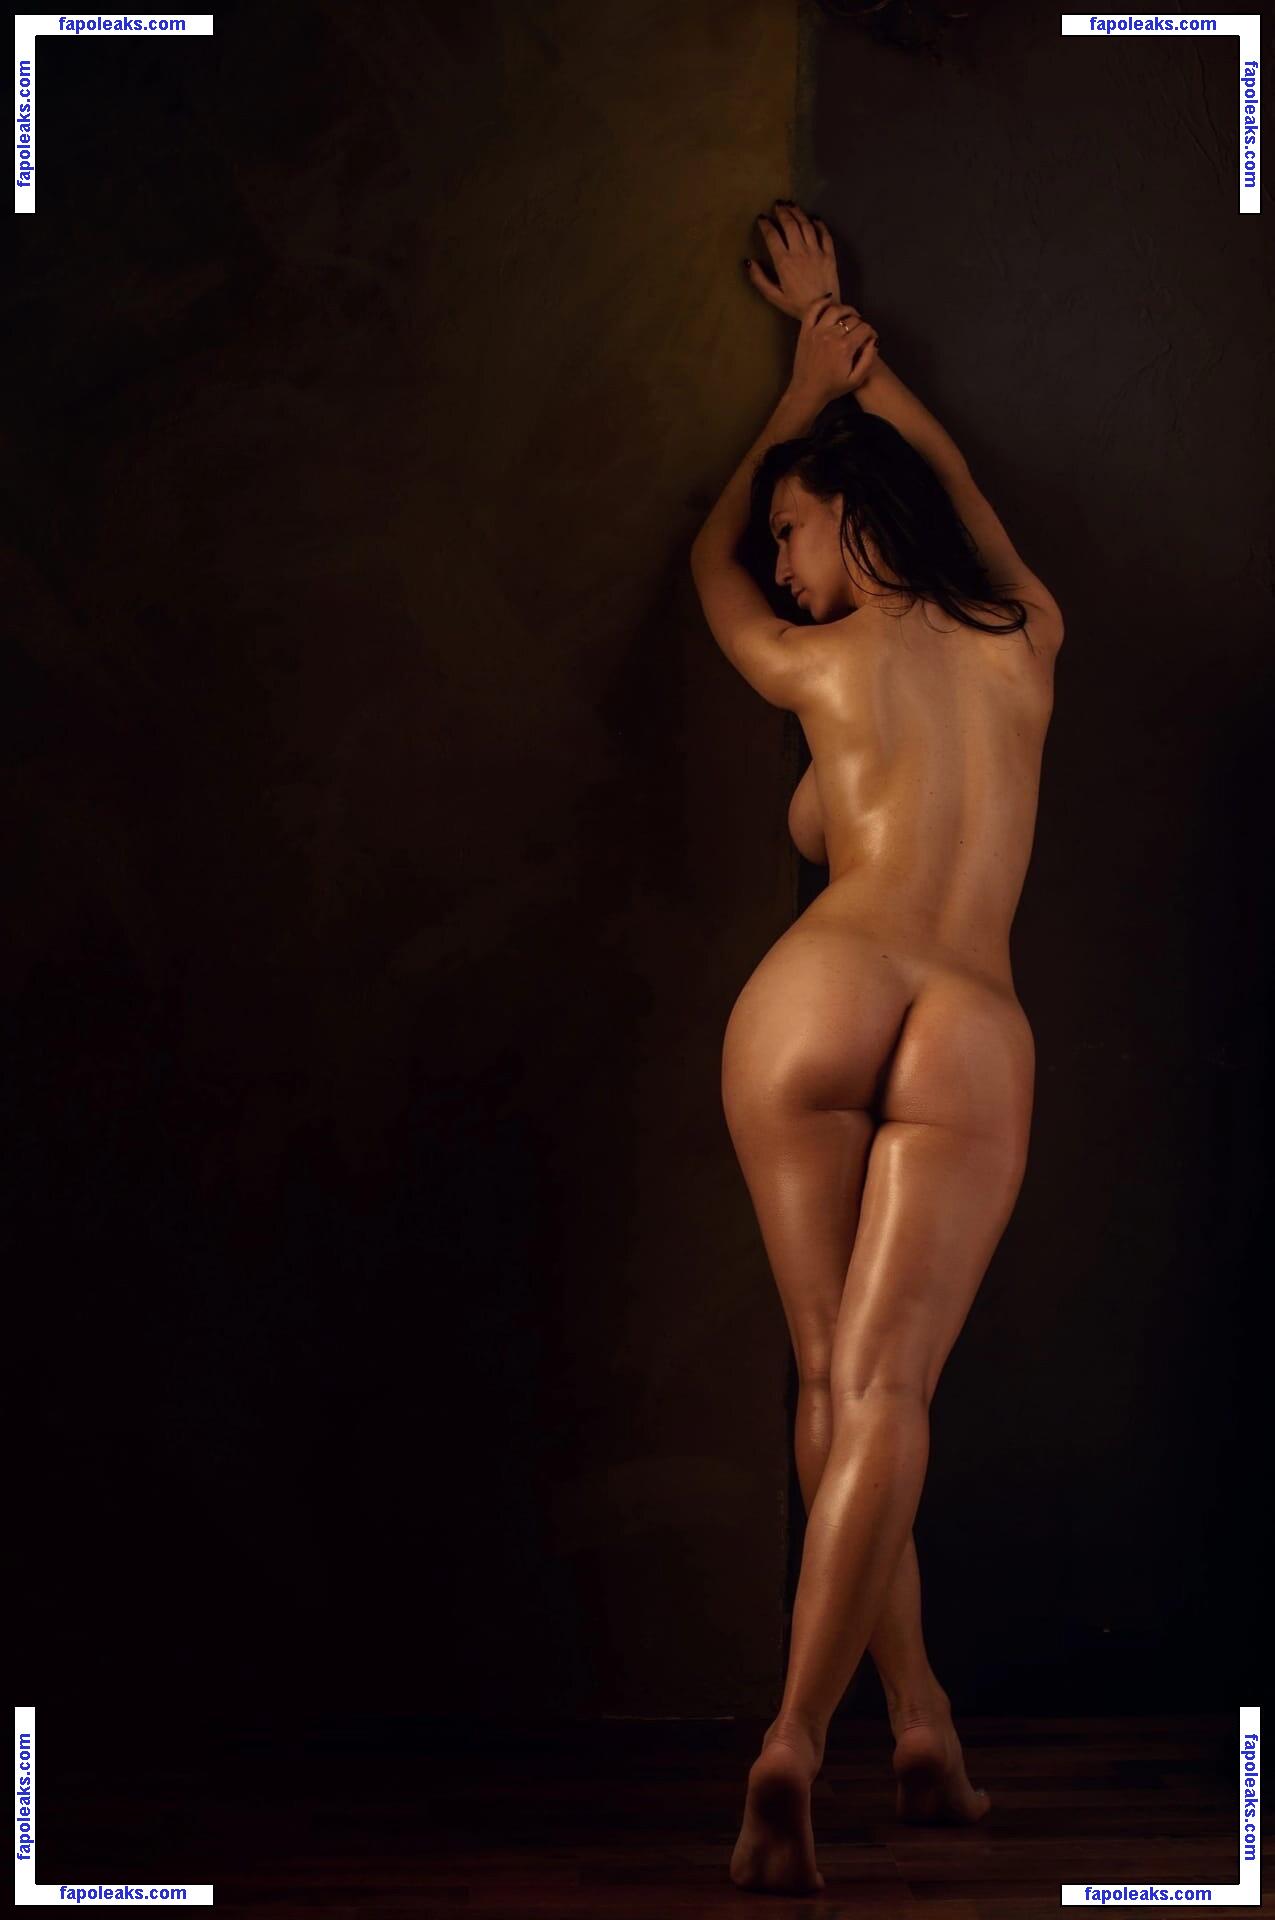 Kristina Knyazeva / kristina_glow.strip nude photo #0012 from OnlyFans